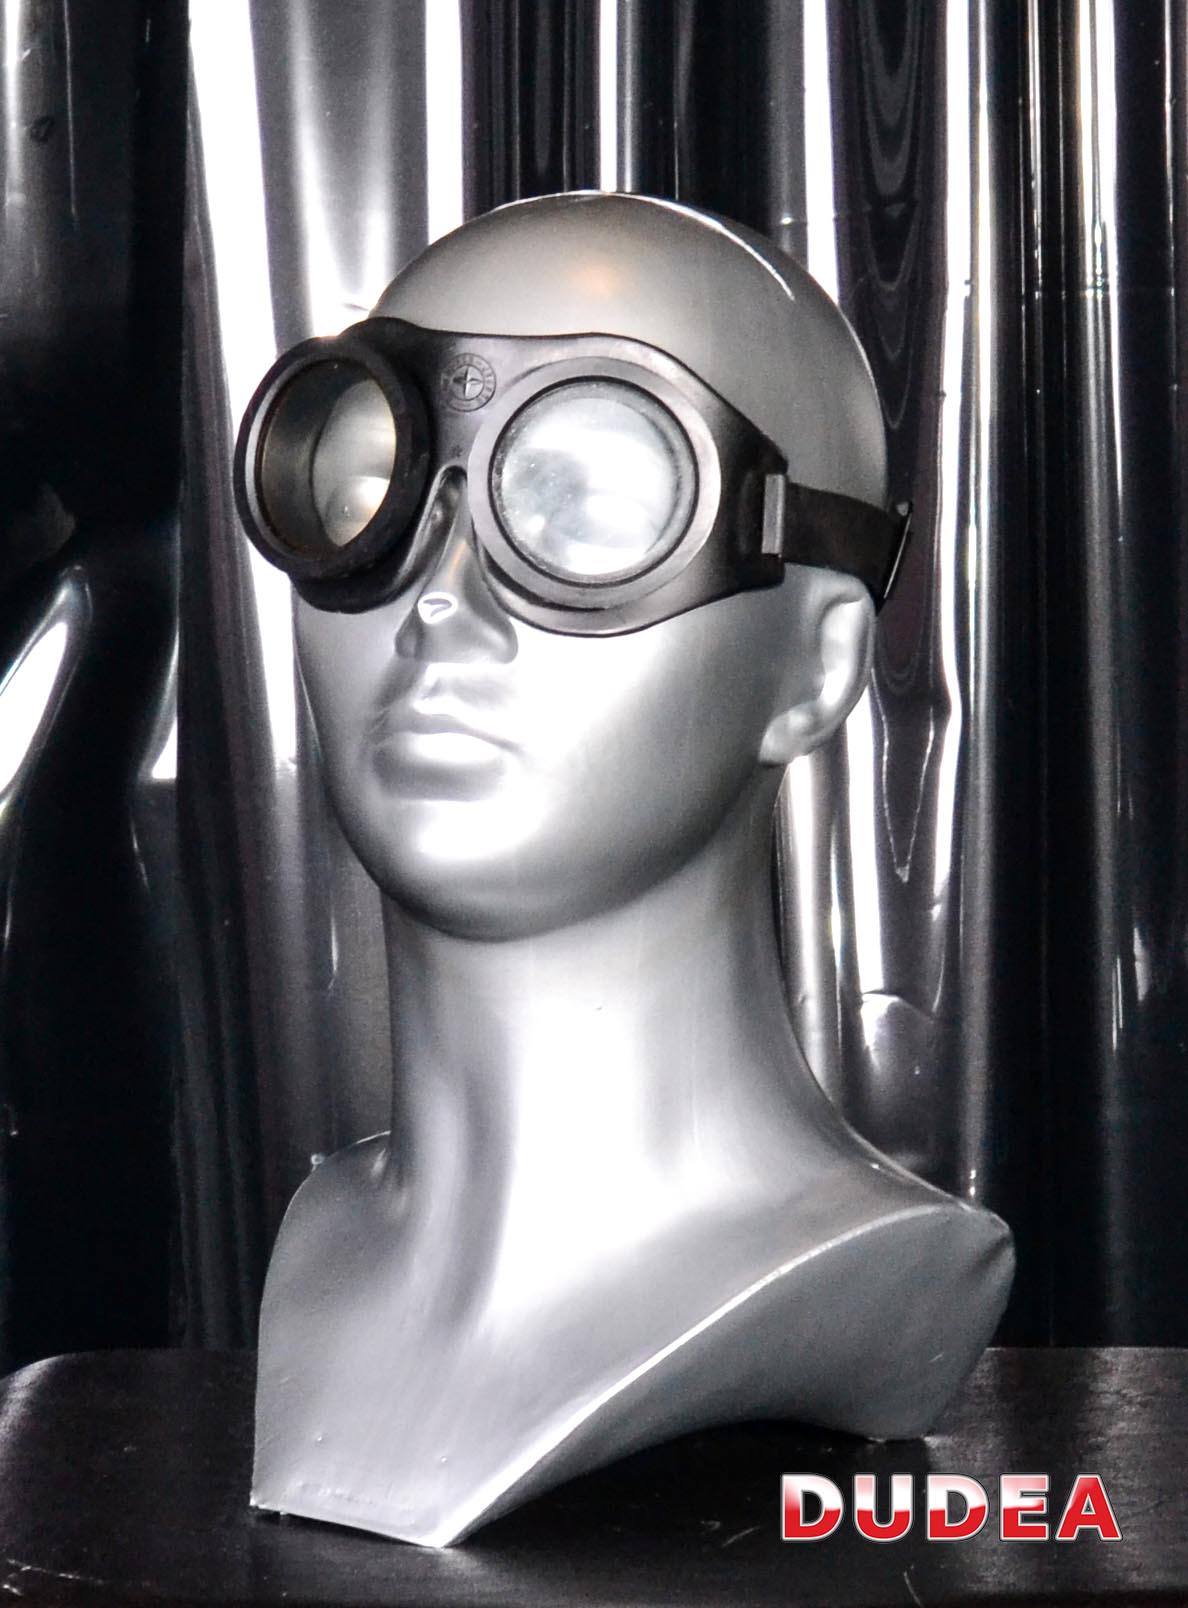 Очки резиновые защитные. Очки защитные в резиновой оправе. Советские резиновые очки с круглыми стеклами. Заклеить резиновые очки. Пыле водо защищённые круглые очки резиновые.